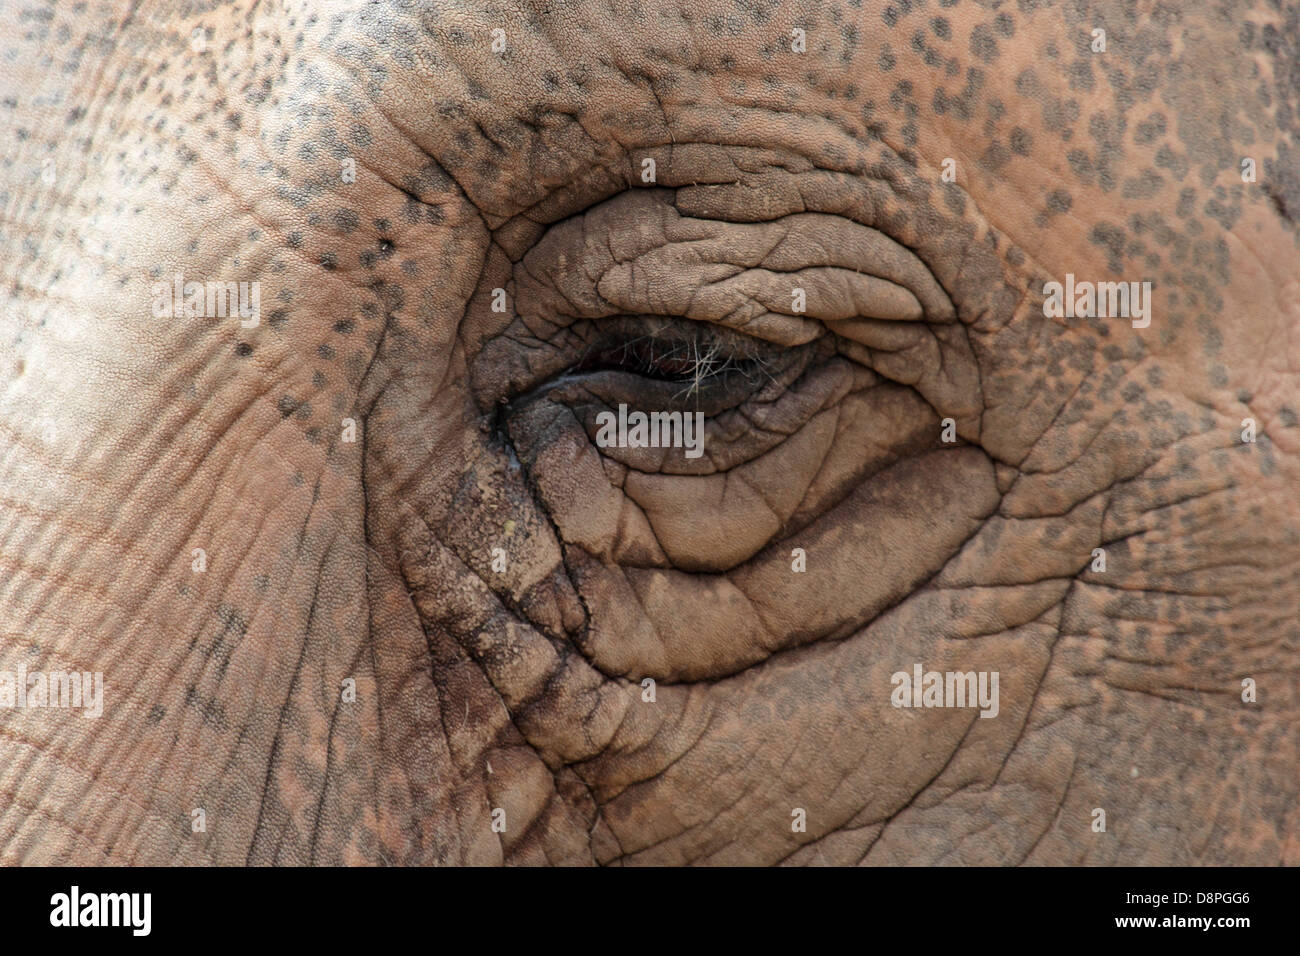 Primer plano del ojo de un elefante asiático Foto de stock